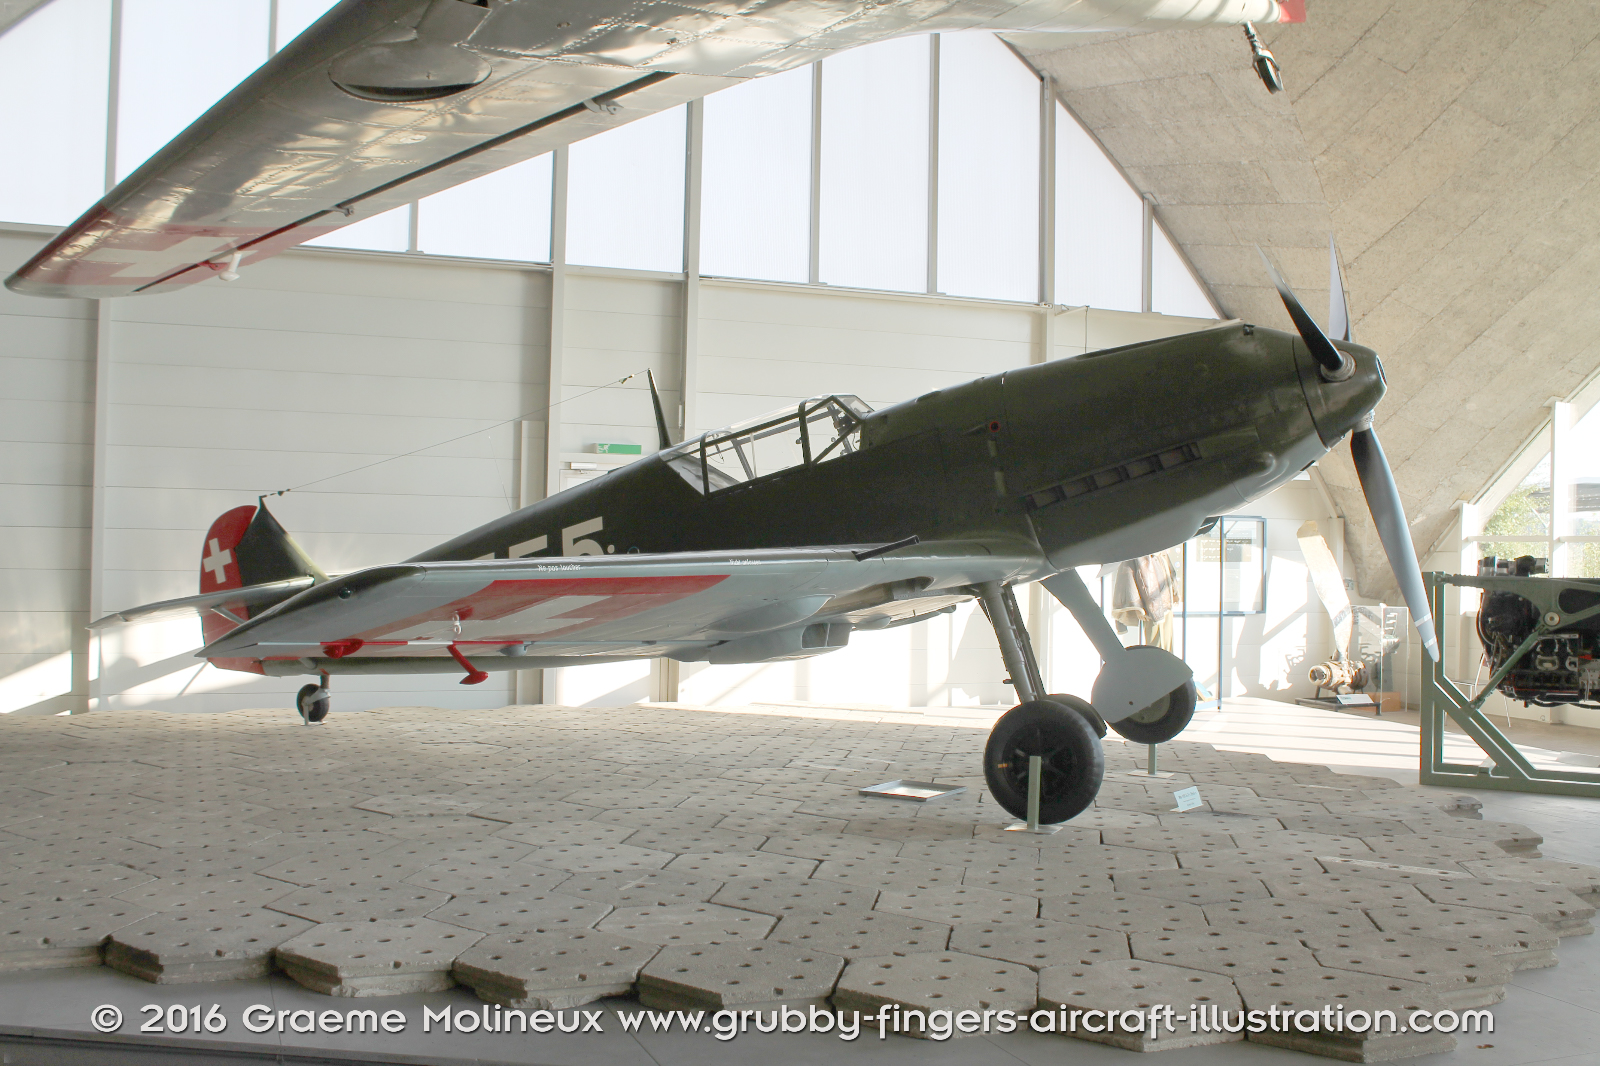 MESSERSCHMITT_BF_109E_J-355_Swiss_Air_Force_Museum_2015_01_GrubbyFingers